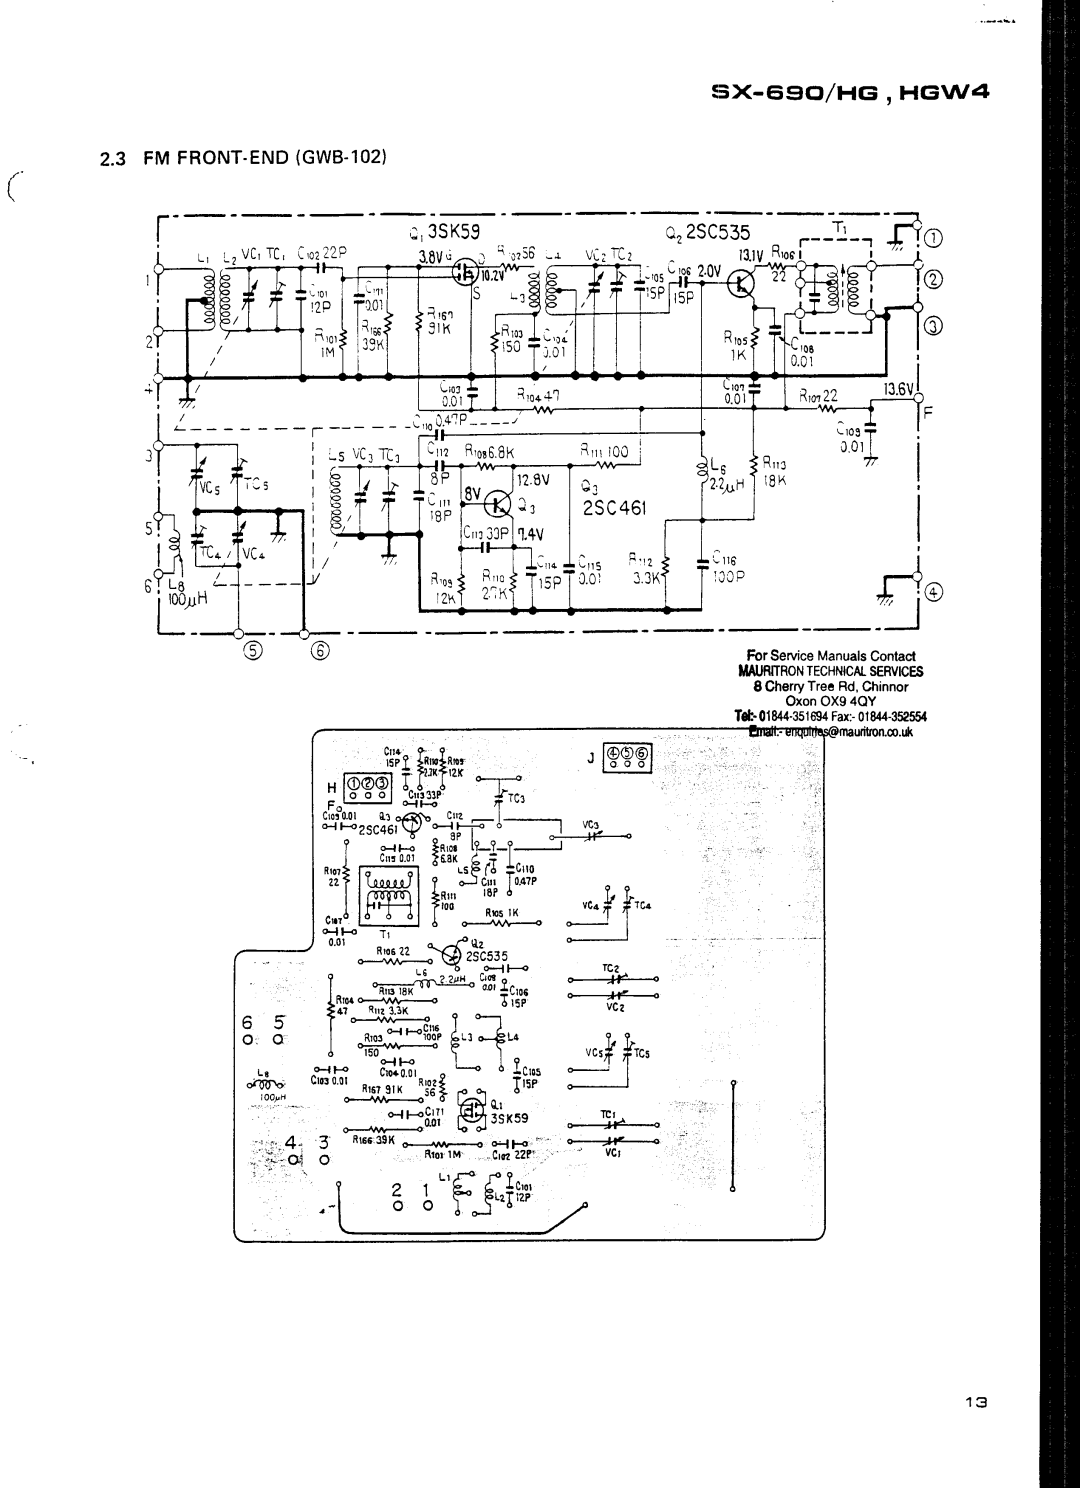 Pioneer HGW4 manual 